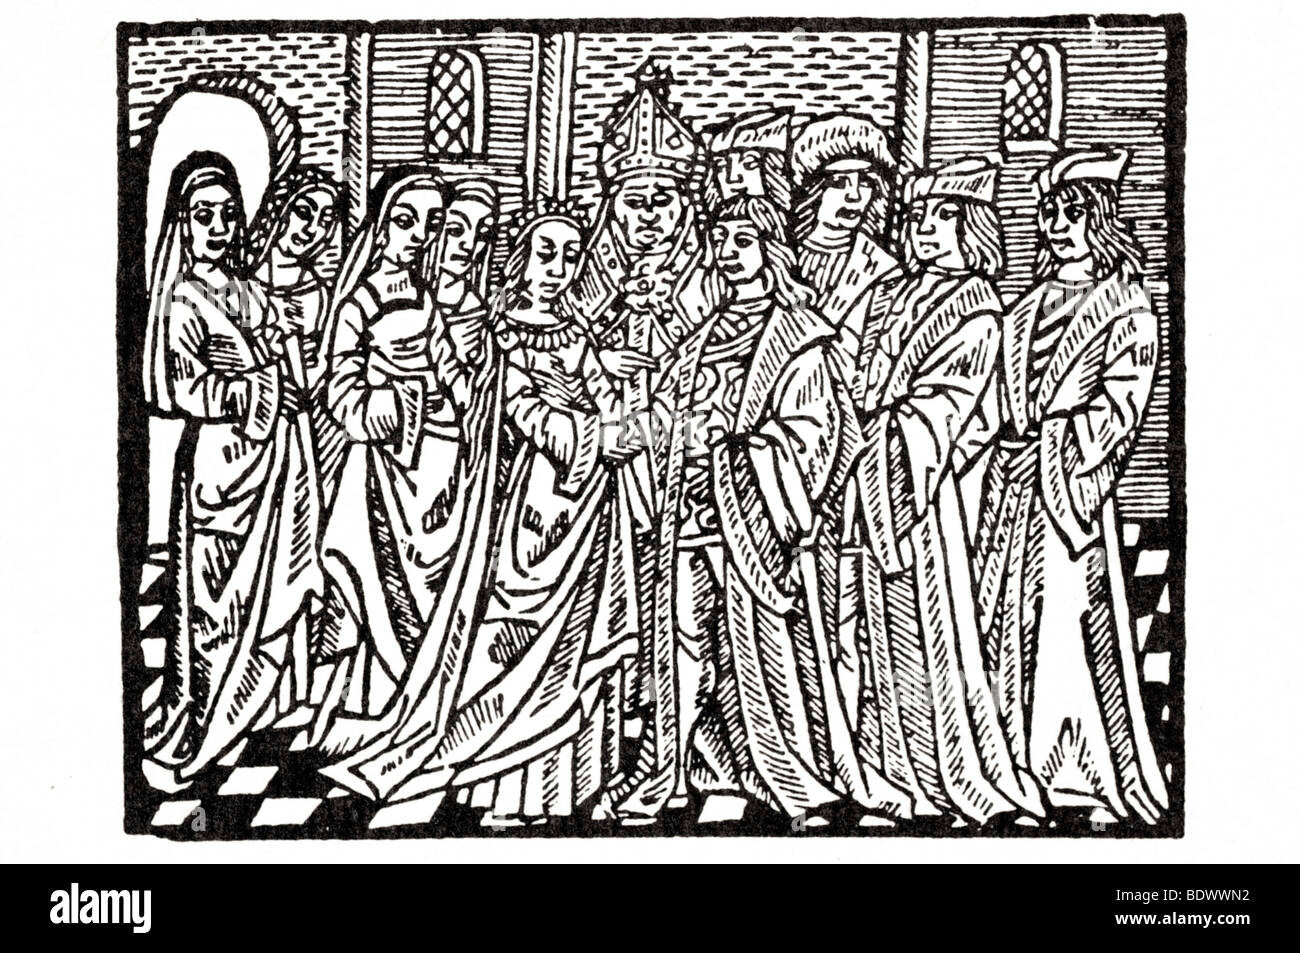 Pynson r 1501 traduction & mariage de la princesse Catherine un mariage deux dames deux plus une épouse d'un évêque un groom dans un oge Banque D'Images